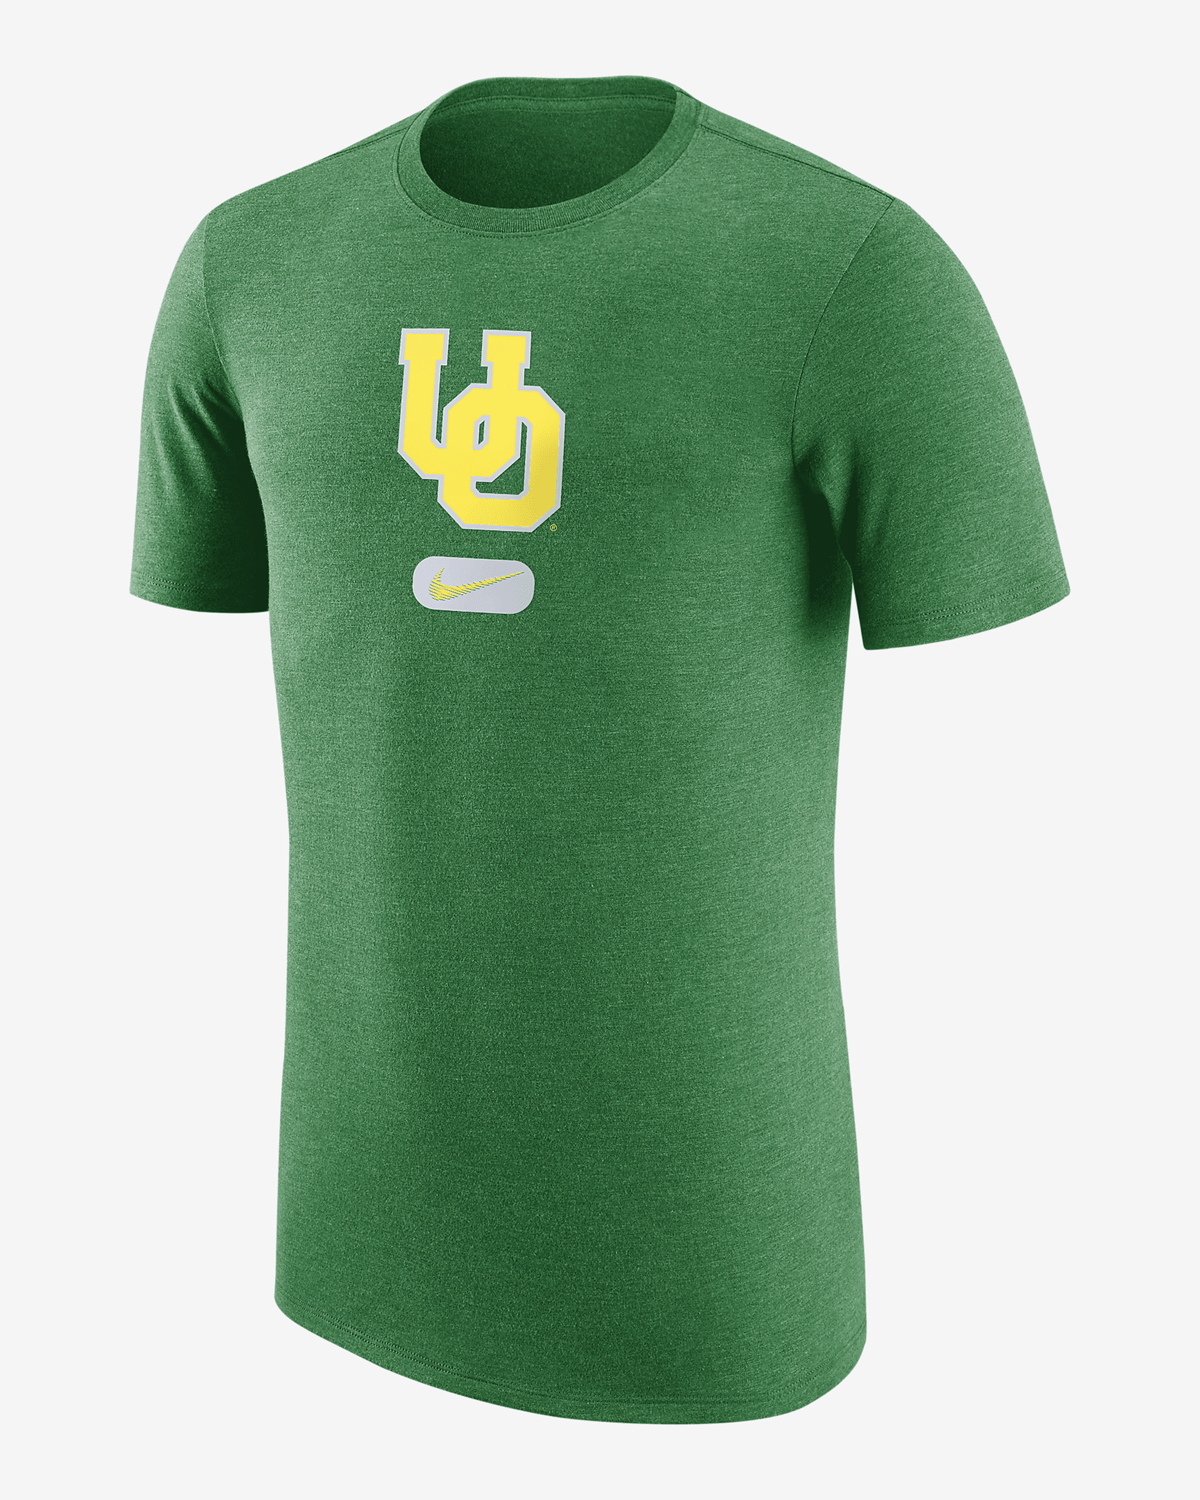 Nike-Dunk-Low-Oregon-T-Shirt